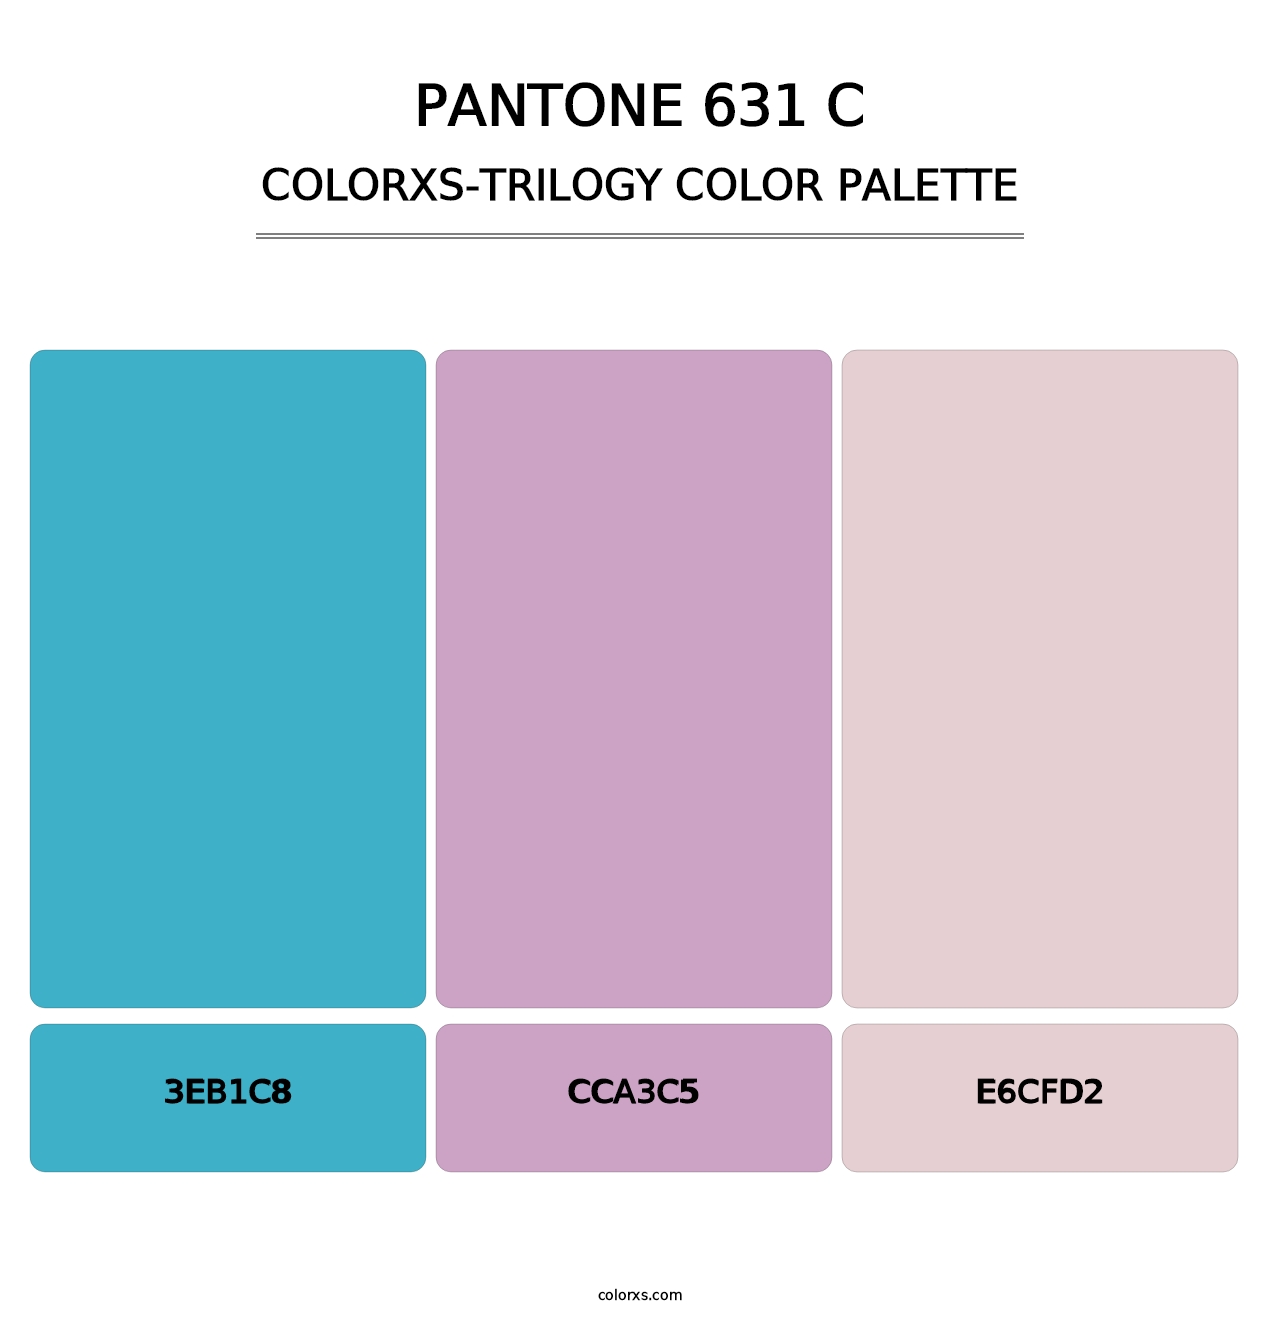 PANTONE 631 C - Colorxs Trilogy Palette